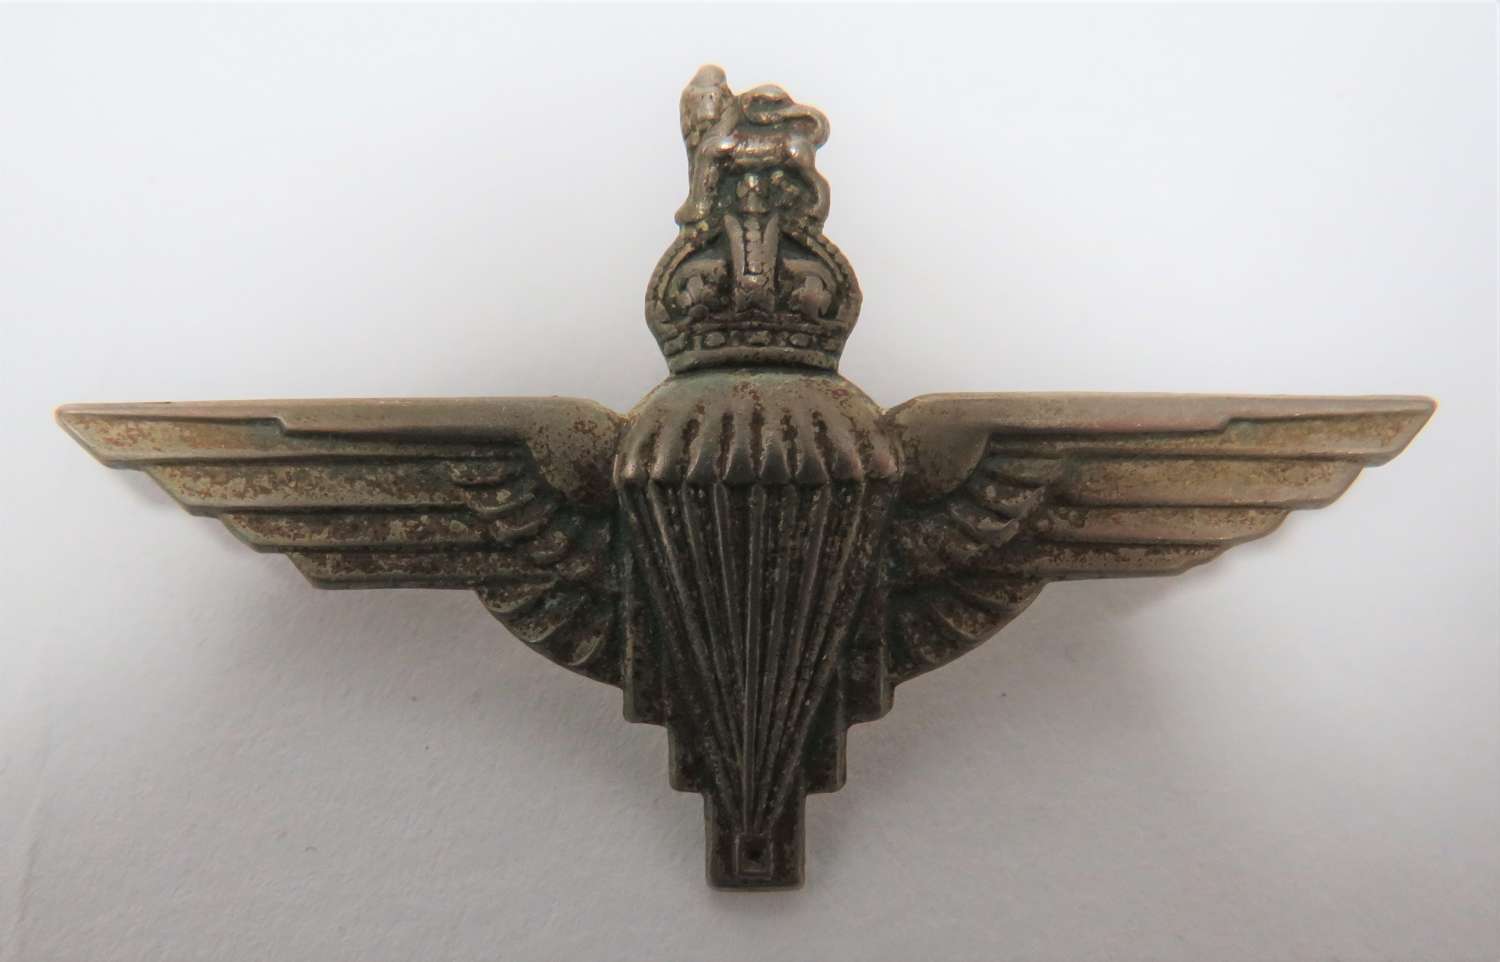 WW2 Parachute Regiment Beret Badge